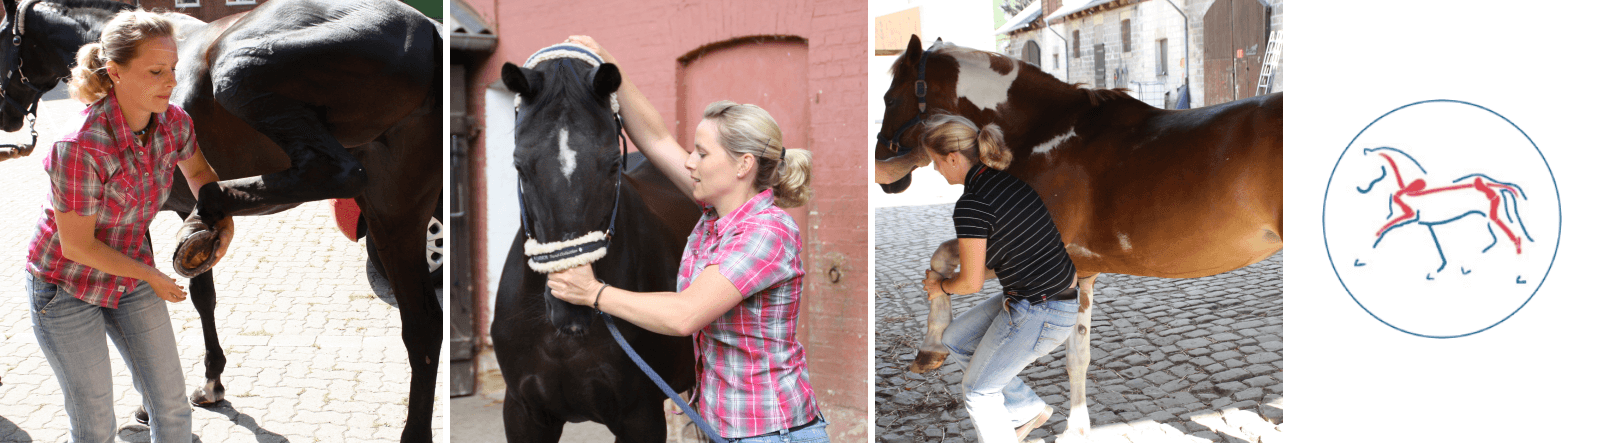 Osteopathie - osteopathische Behandlungen an Pferden und Hunden